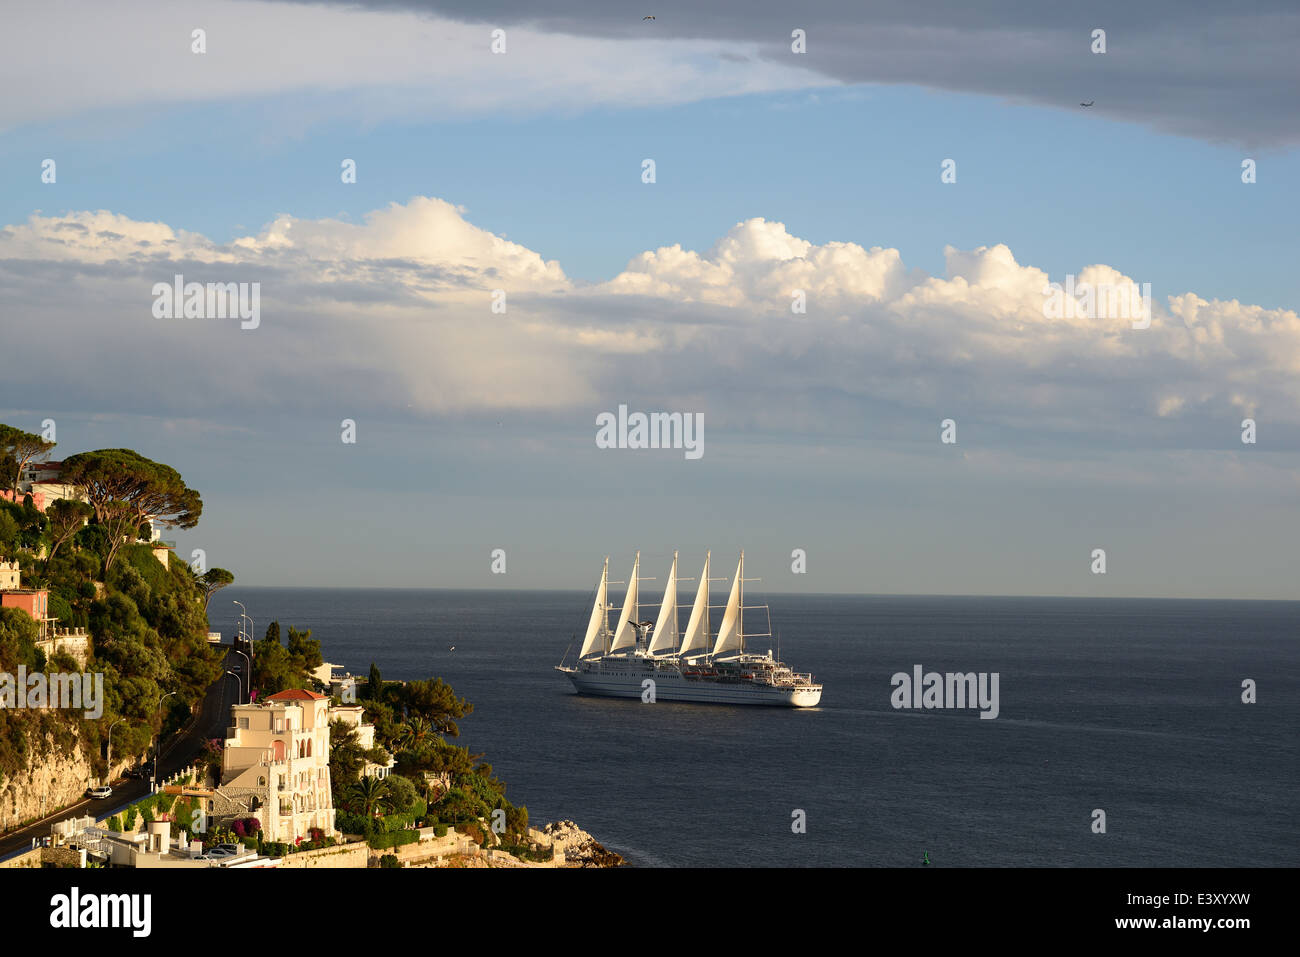 Club Med 2, das längste Segelschiff der Welt (Stand 2014) mit 194 Metern. Vor der Küste von Nizza, Alpes-Maritimes, Französische Riviera, Frankreich. Stockfoto